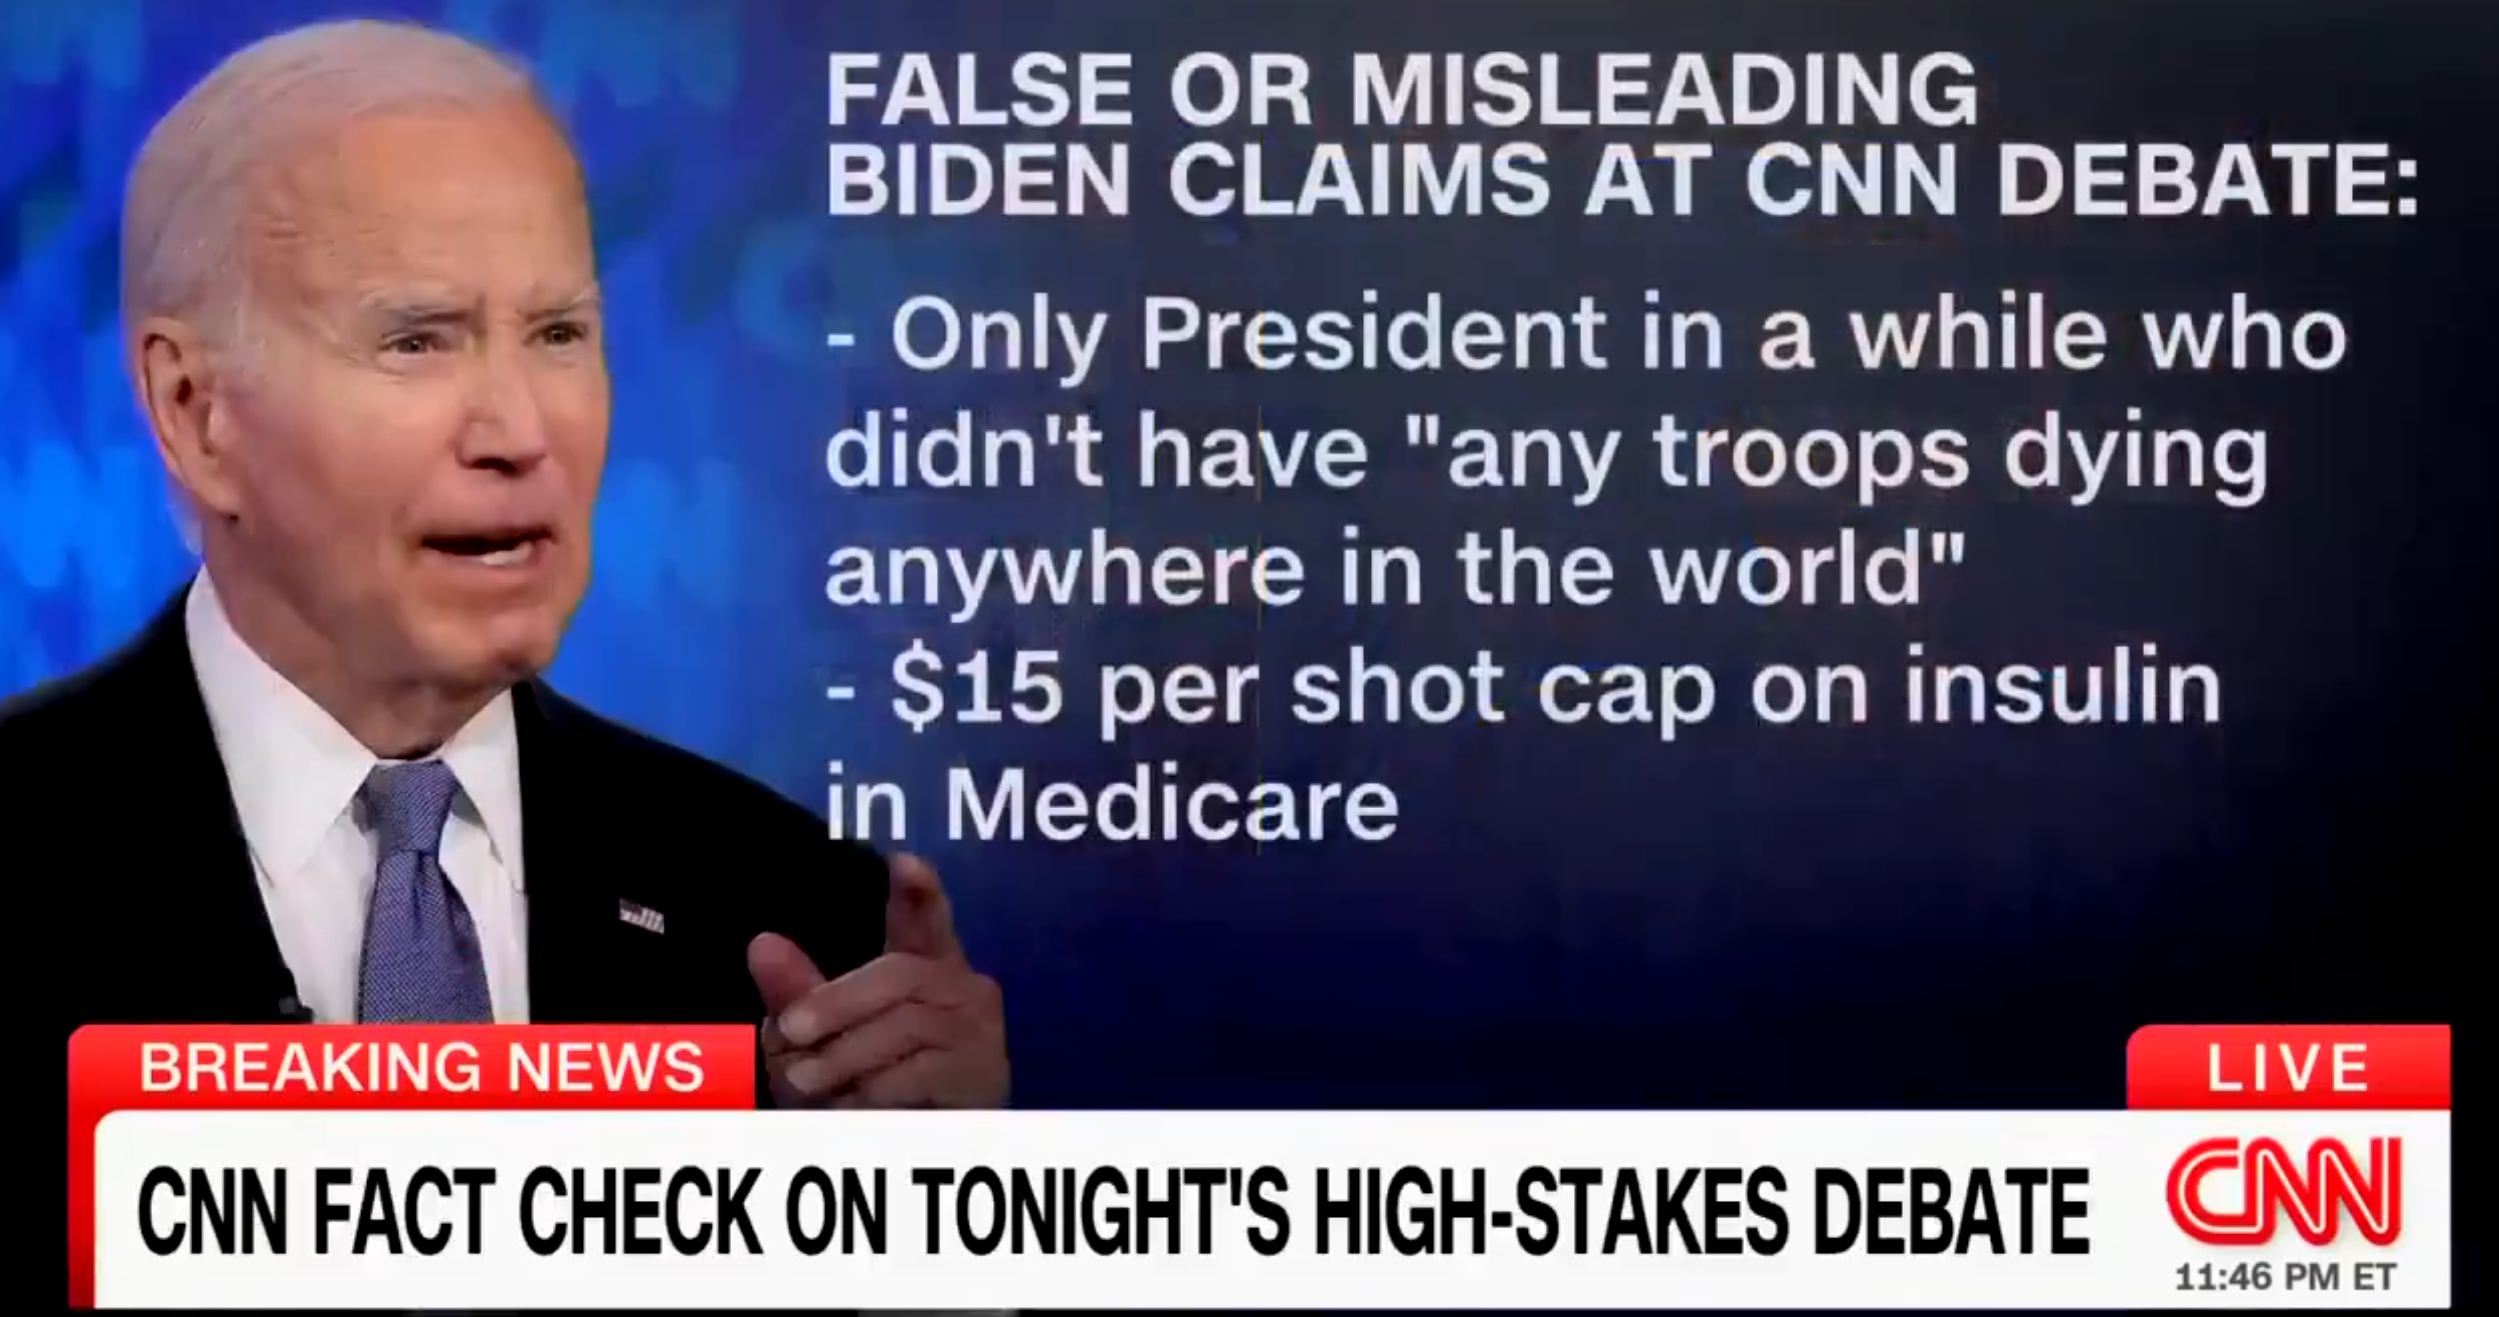 Po trapných manipulacích mainstreamu již dokonce americká CNN přiznala, že lhal zejména Biden (video)